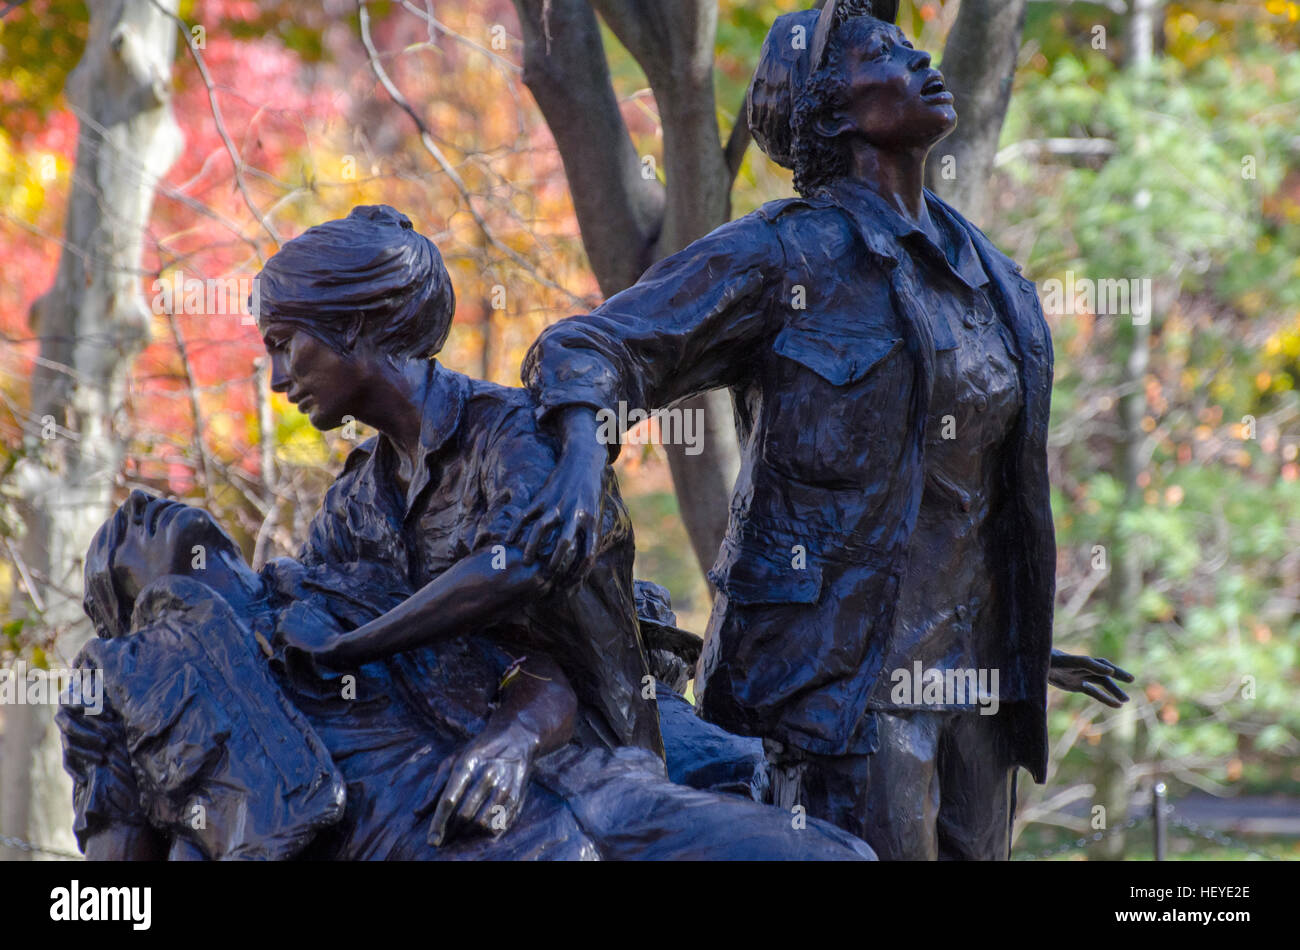 Le Vietnam Women's Memorial commémore les femmes, dont la plupart étaient des infirmières, qui ont servi dans la guerre du Vietnam. Banque D'Images